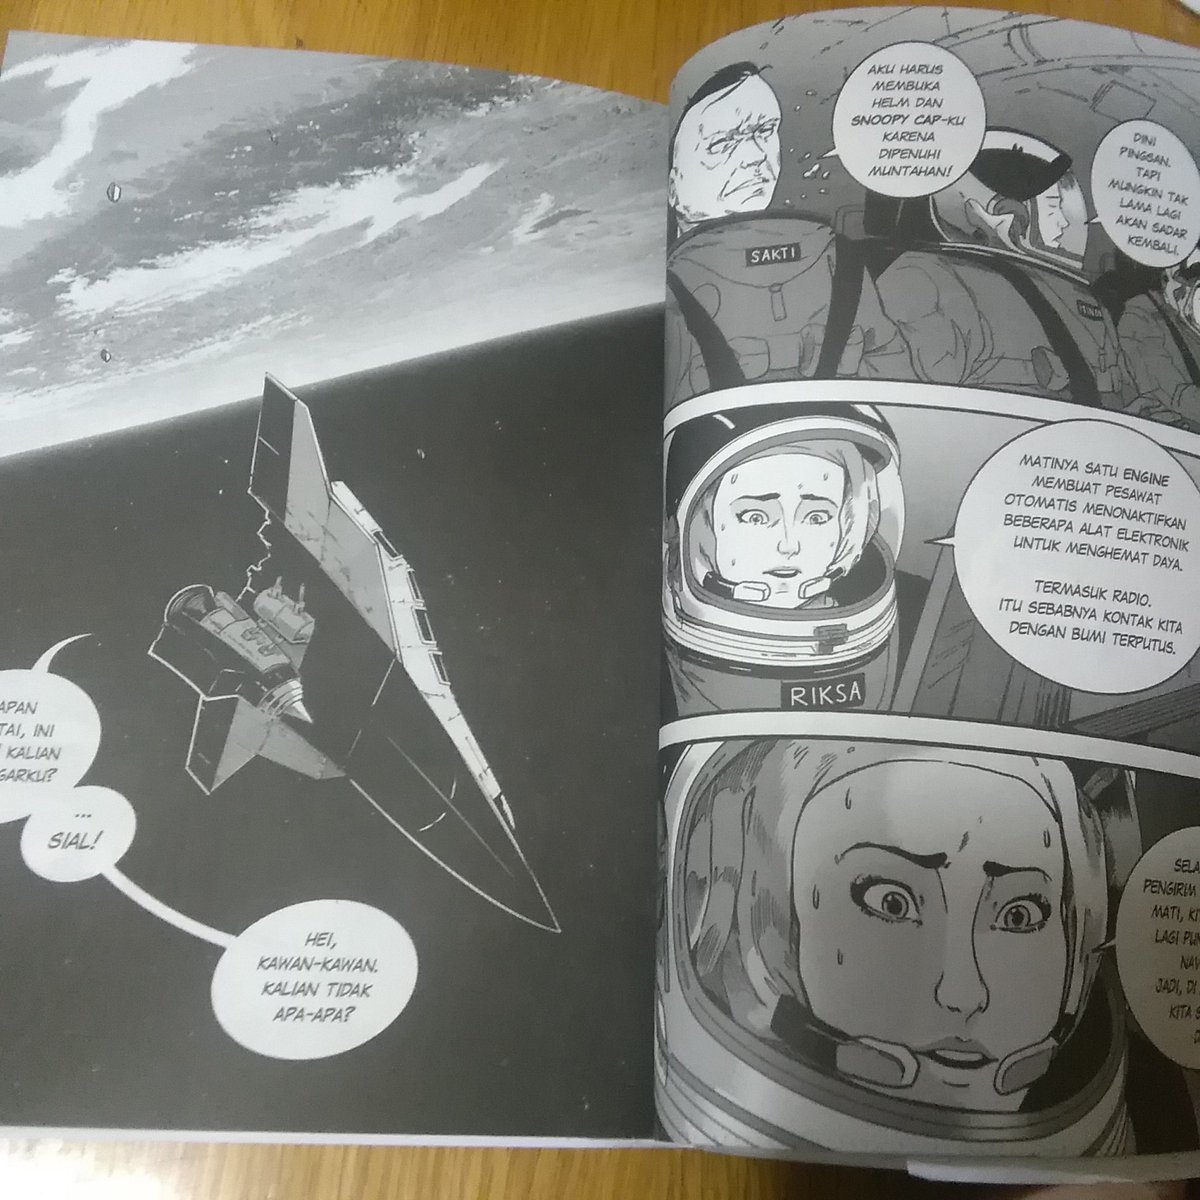 Taka インドネシア人女性宇宙飛行士の活躍を描いた漫画 Rixa インドネシア国立航空宇宙 研究所 Lapan 全面協力の本格宇宙漫画です 第１話は英語でも公開されているので 興味がある方はぜひ読んでみて下さい T Co Oeyo93iv78 印尼漫画